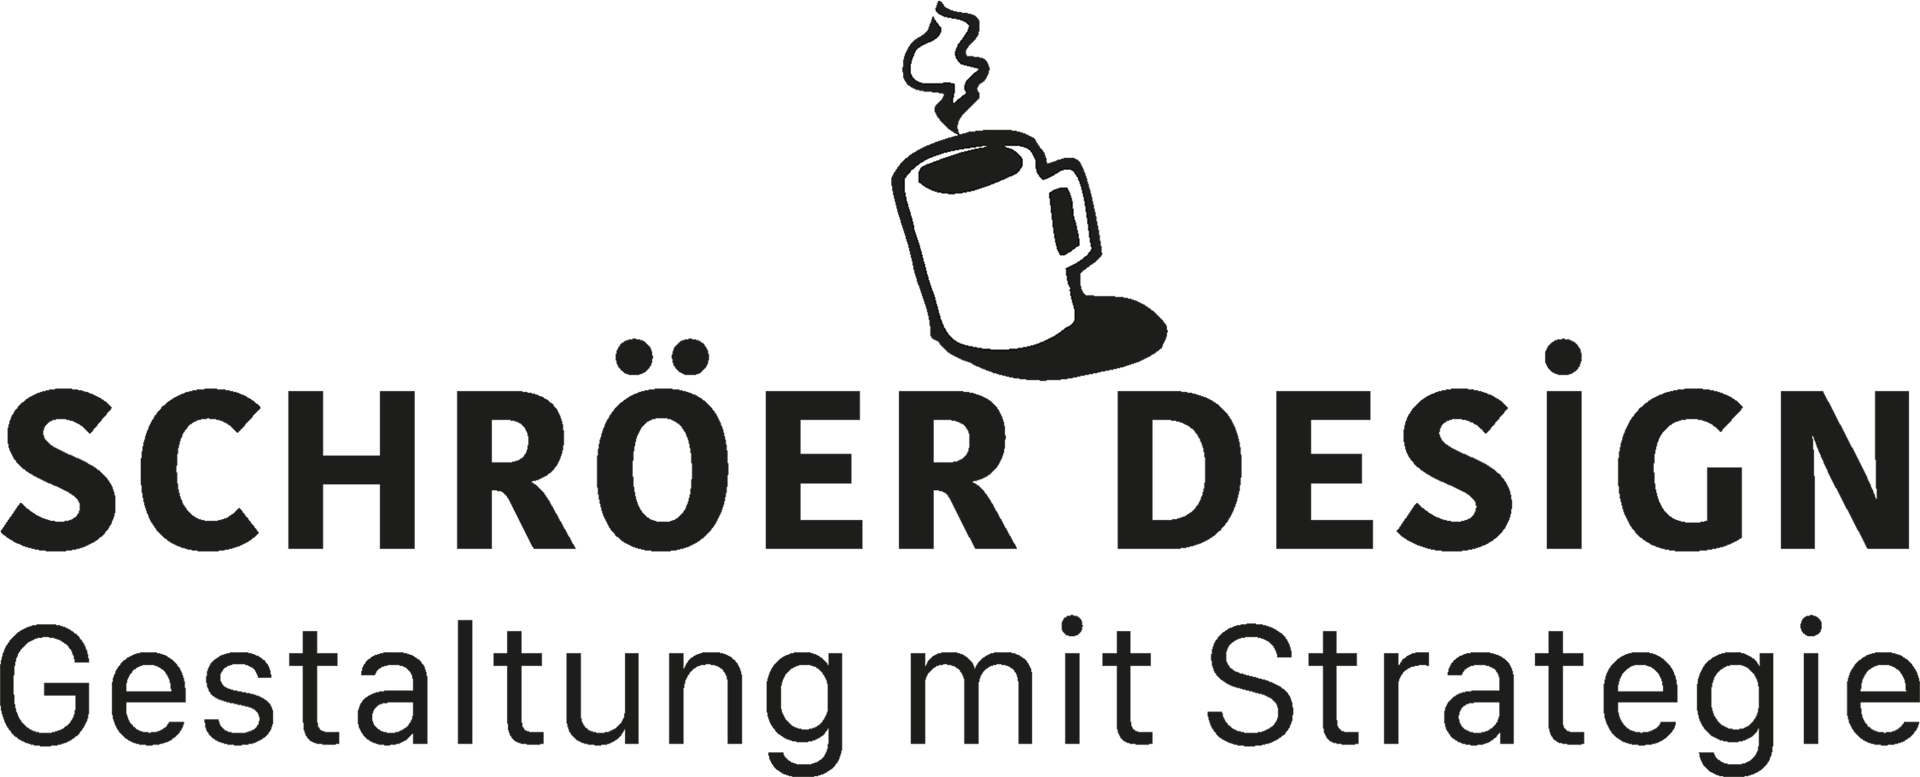 Bild: Schröer Design Gestaltung mit Strategie – Logo mit Tasse